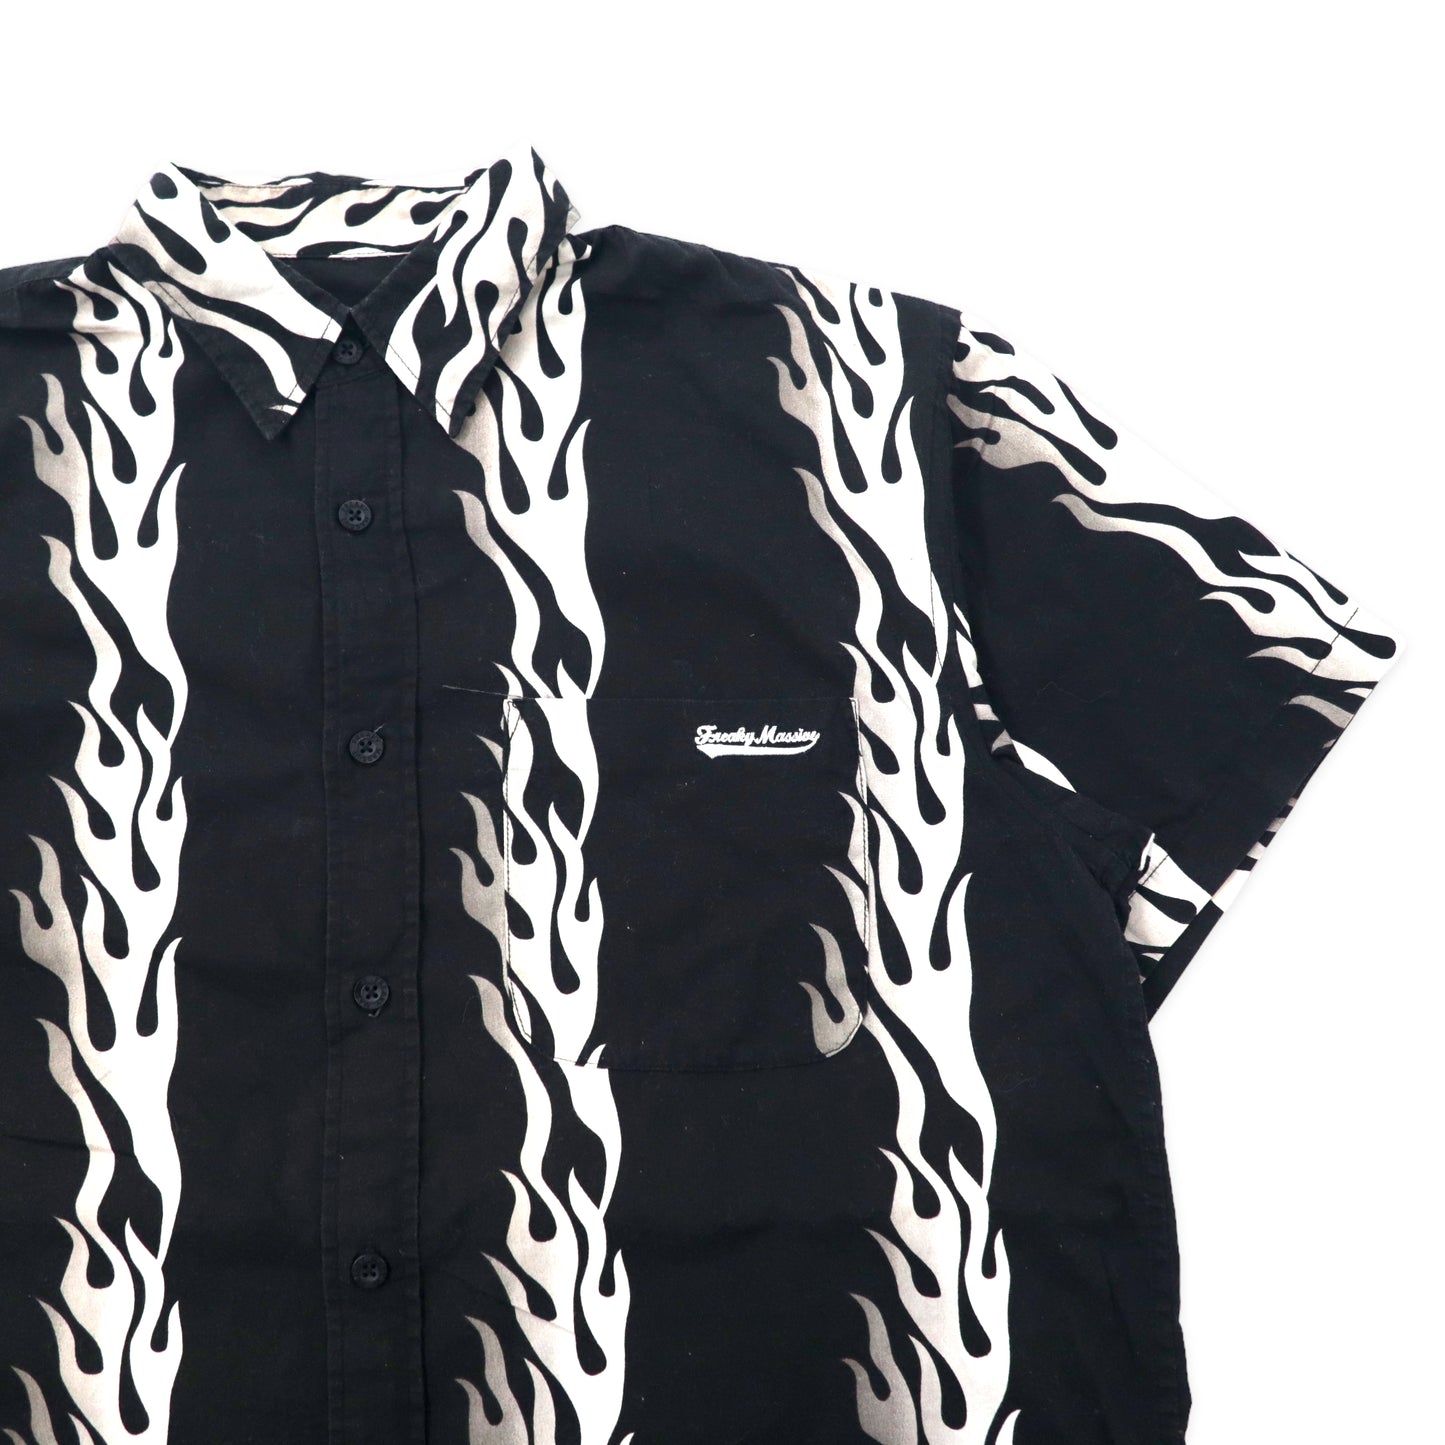 FREAKY 90年代 ファイヤーパターン 半袖シャツ アロハシャツ L ブラック コットン 総柄